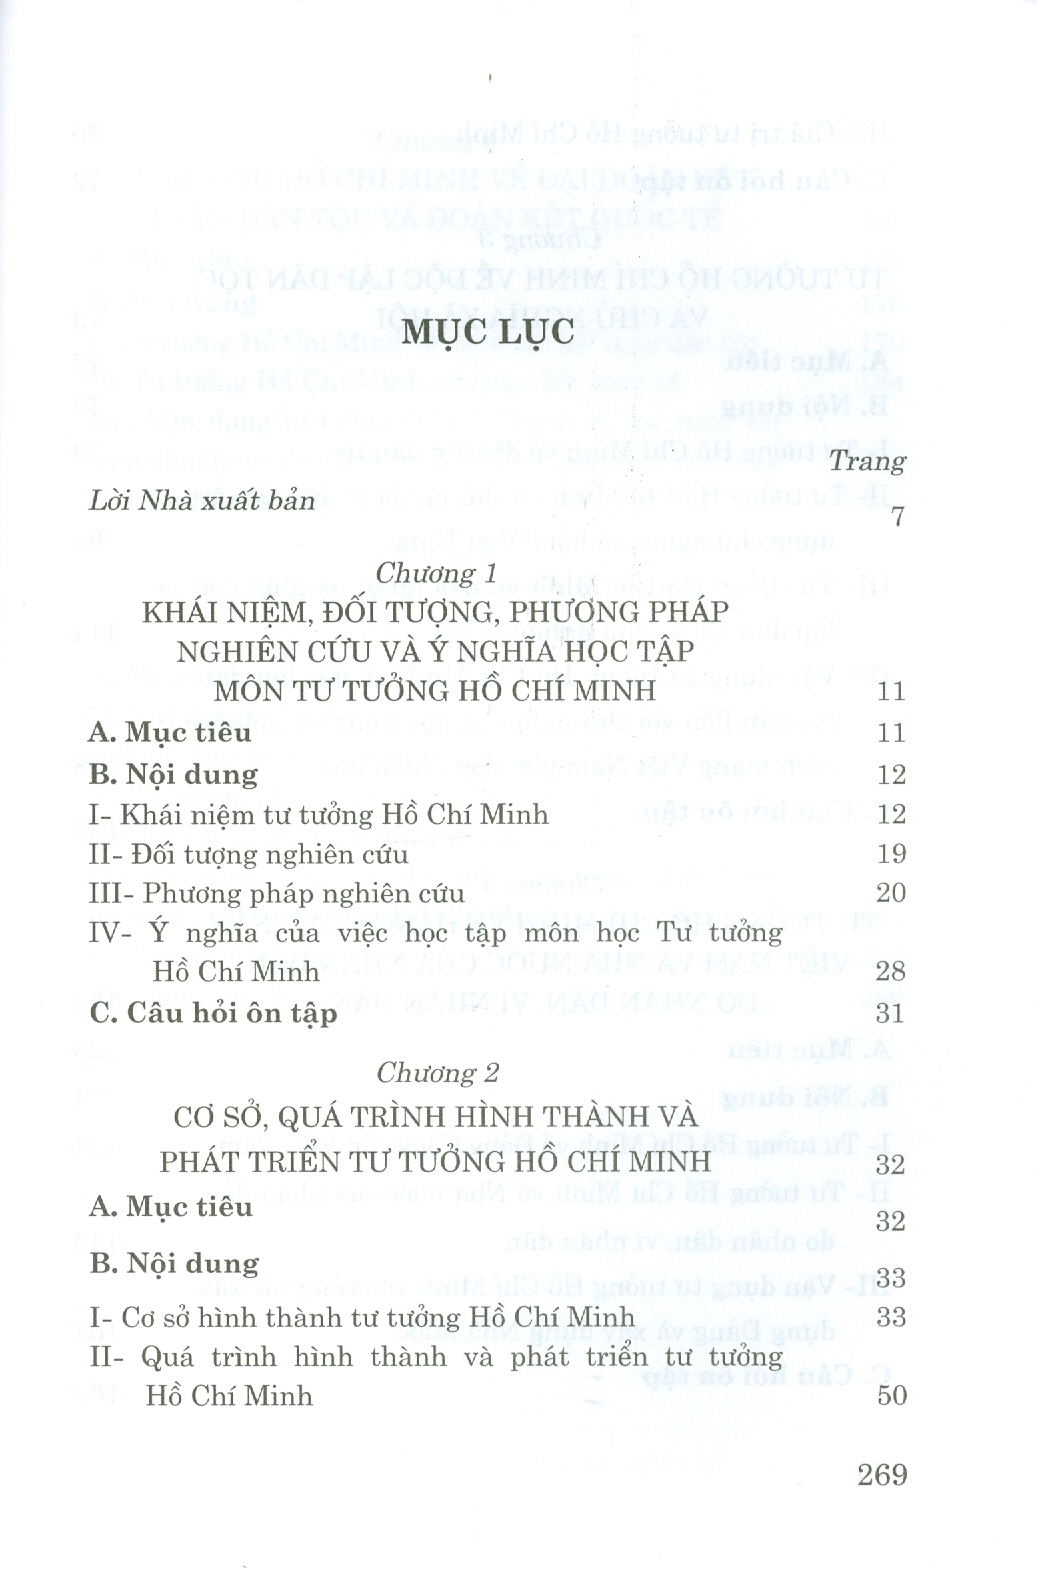 Combo Giáo Trình Lịch Sử Đảng Cộng Sản Việt Nam + Giáo Trình Tư Tưởng Hồ Chí Minh (Dành Cho Bậc Đại Học Hệ Không Chuyên Lý Luận Chính Trị) - Bộ mới năm 2021